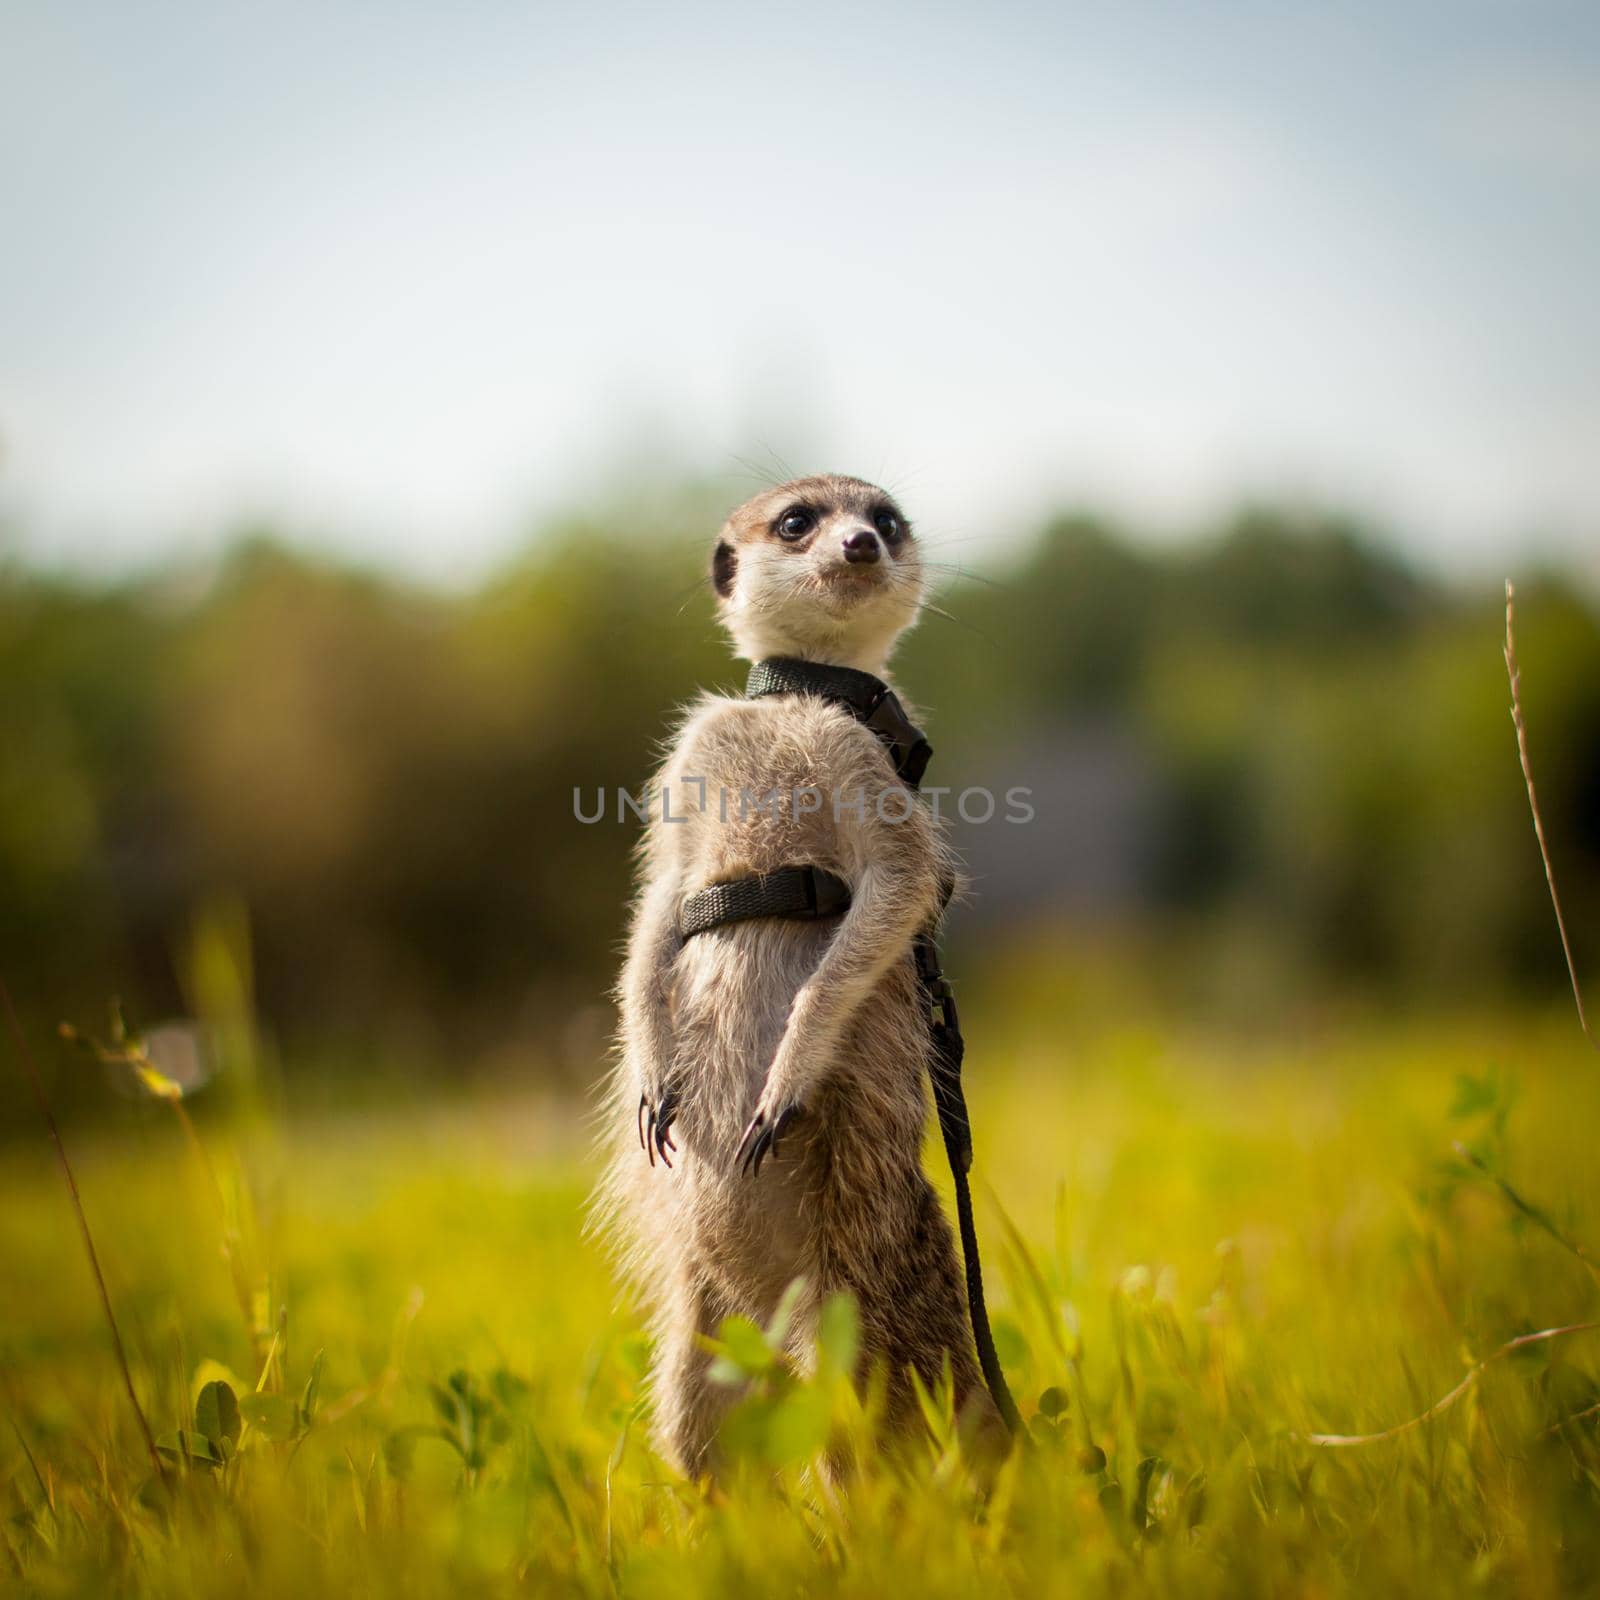 The meerkat or suricate, 1 years old walking outside by RosaJay